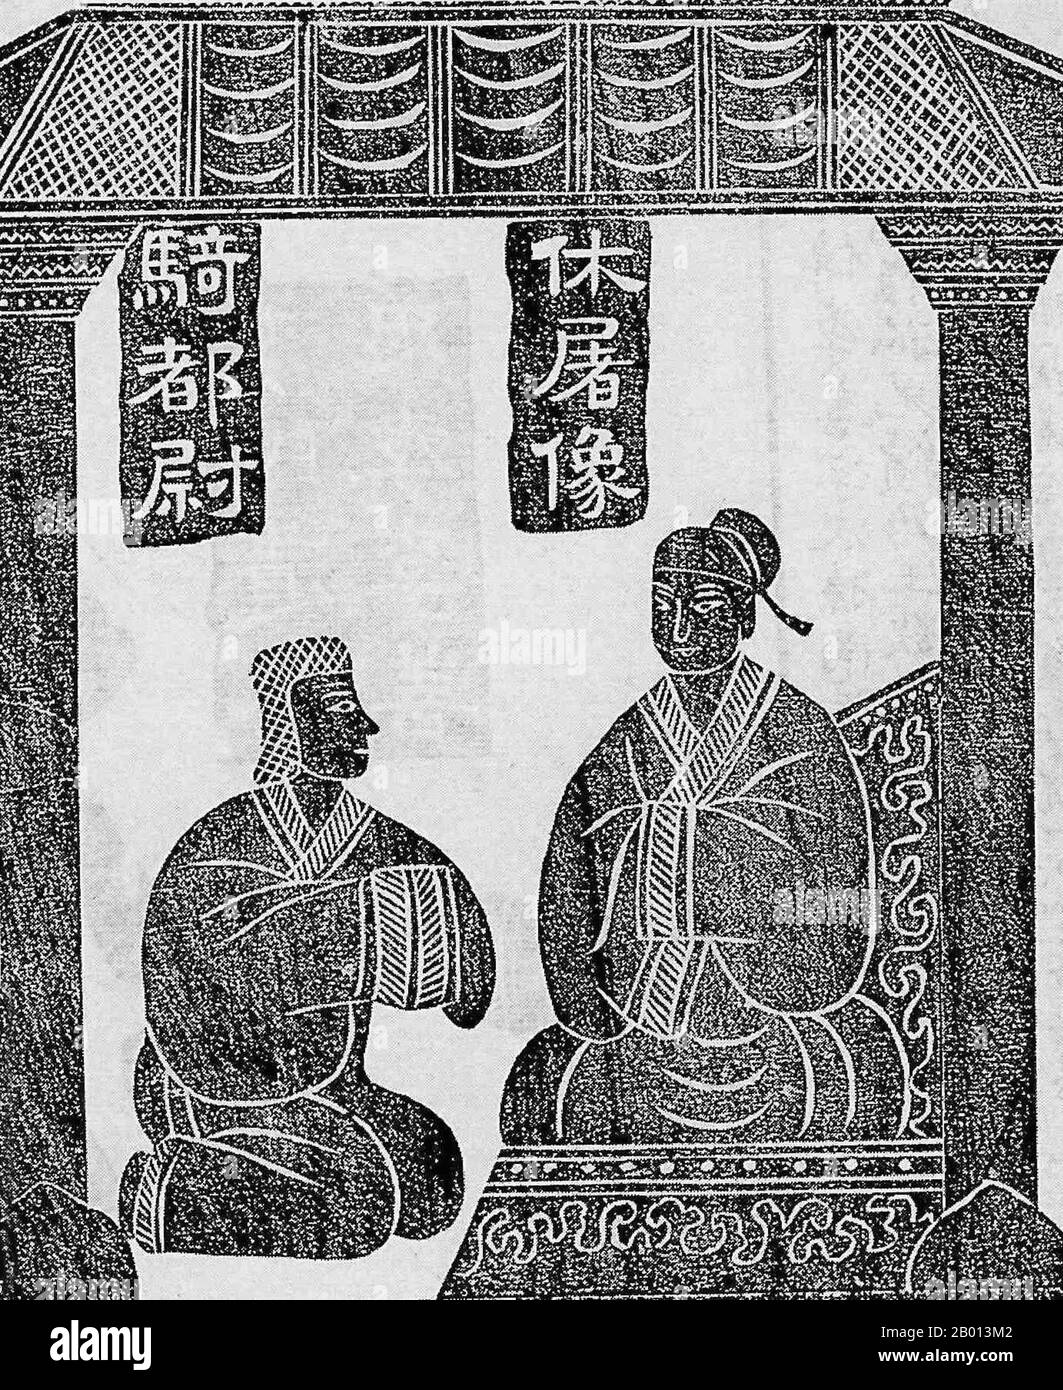 China: Die Geschichte von Jin Midi. Wu Liang Schrein, Jiaxiang, Shandong. 2. Jahrhundert n. Chr. Tintenabreibungen aus Stein geschnitzten Reliefs. Jin Midi (lebte 134–86 v. Chr.) wurde als Prinz des Nomaden Xiongnu geboren, einer Konföderation zentralasiatischer Stämme, die einst die östliche eurasische Steppe beherrschten. Er wurde von chinesischen Truppen der Han-Dynastie gefangen genommen und machte einen Sklaven, der Pferde in den kaiserlichen Ställen pflegte. Allerdings gewann er das Vertrauen von Kaiser Wu, als er einen Attentat gegen ihn vereitelte. Als Kaiser Wu an seinem Bett sterbend lag, bezeichnete er Jin Midi, Huo Guang und Shangguan Jie als Regenten. Stockfoto